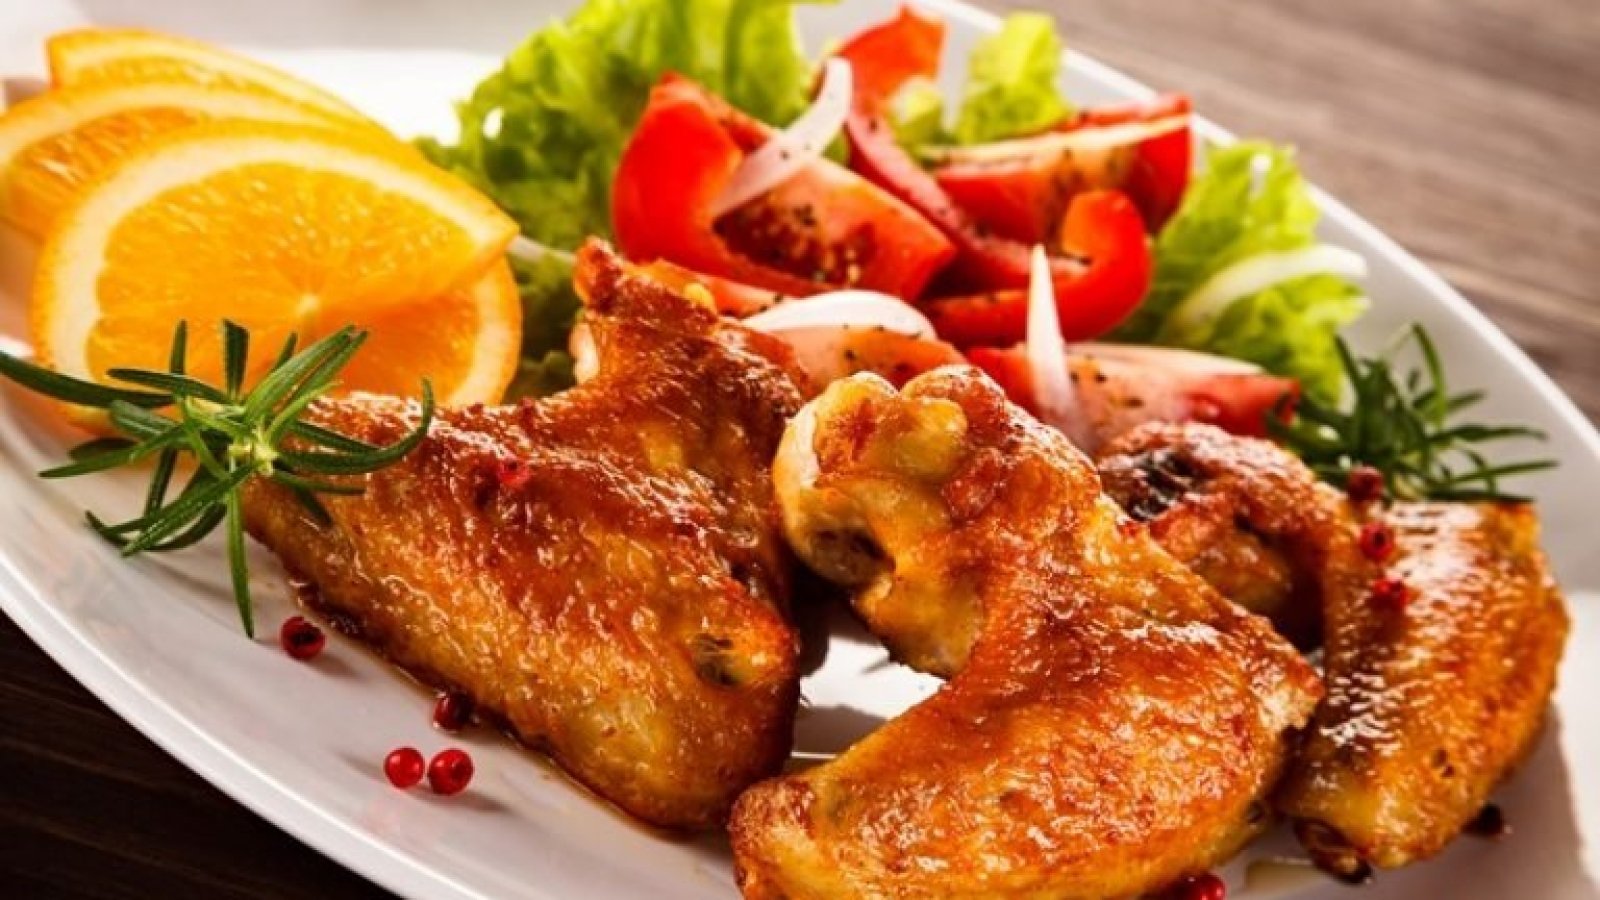 Блюда из курицы по рецепту известного повара, которые быстро готовить | РБК Украина